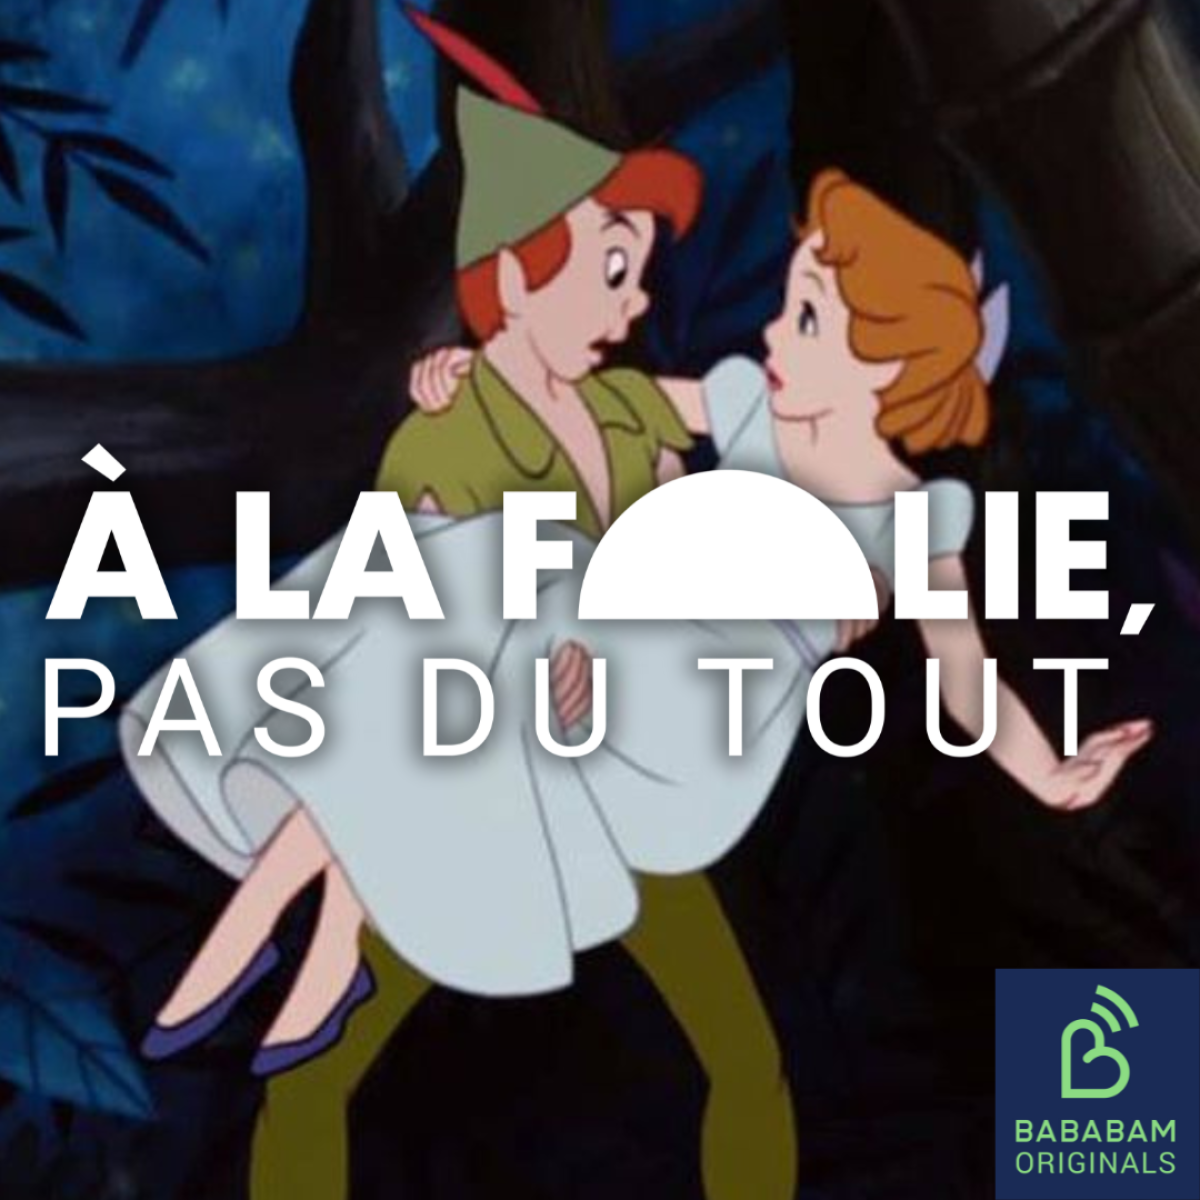 Peter Pan et Wendy : au delà du conte, une histoire de psychologie